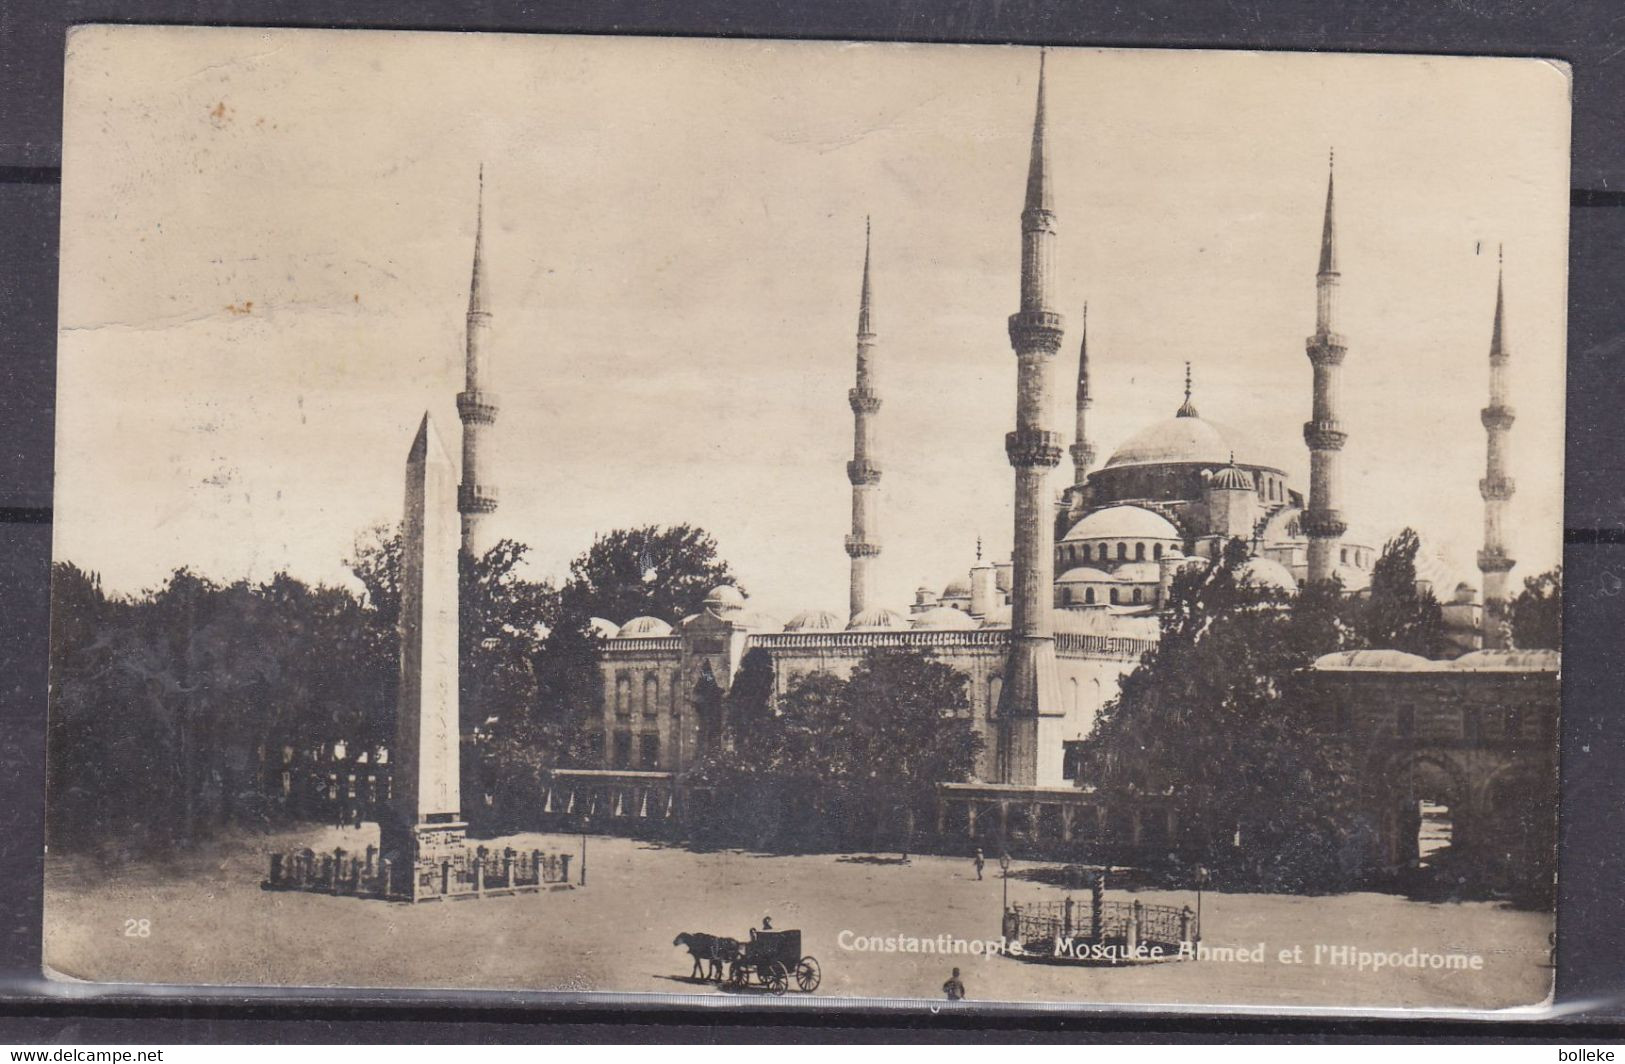 Turquie - Carte Postale De 1929 - Oblit Galata - Exp Vers Gand - Vue De La Mosquée Et Hippodrome - Covers & Documents